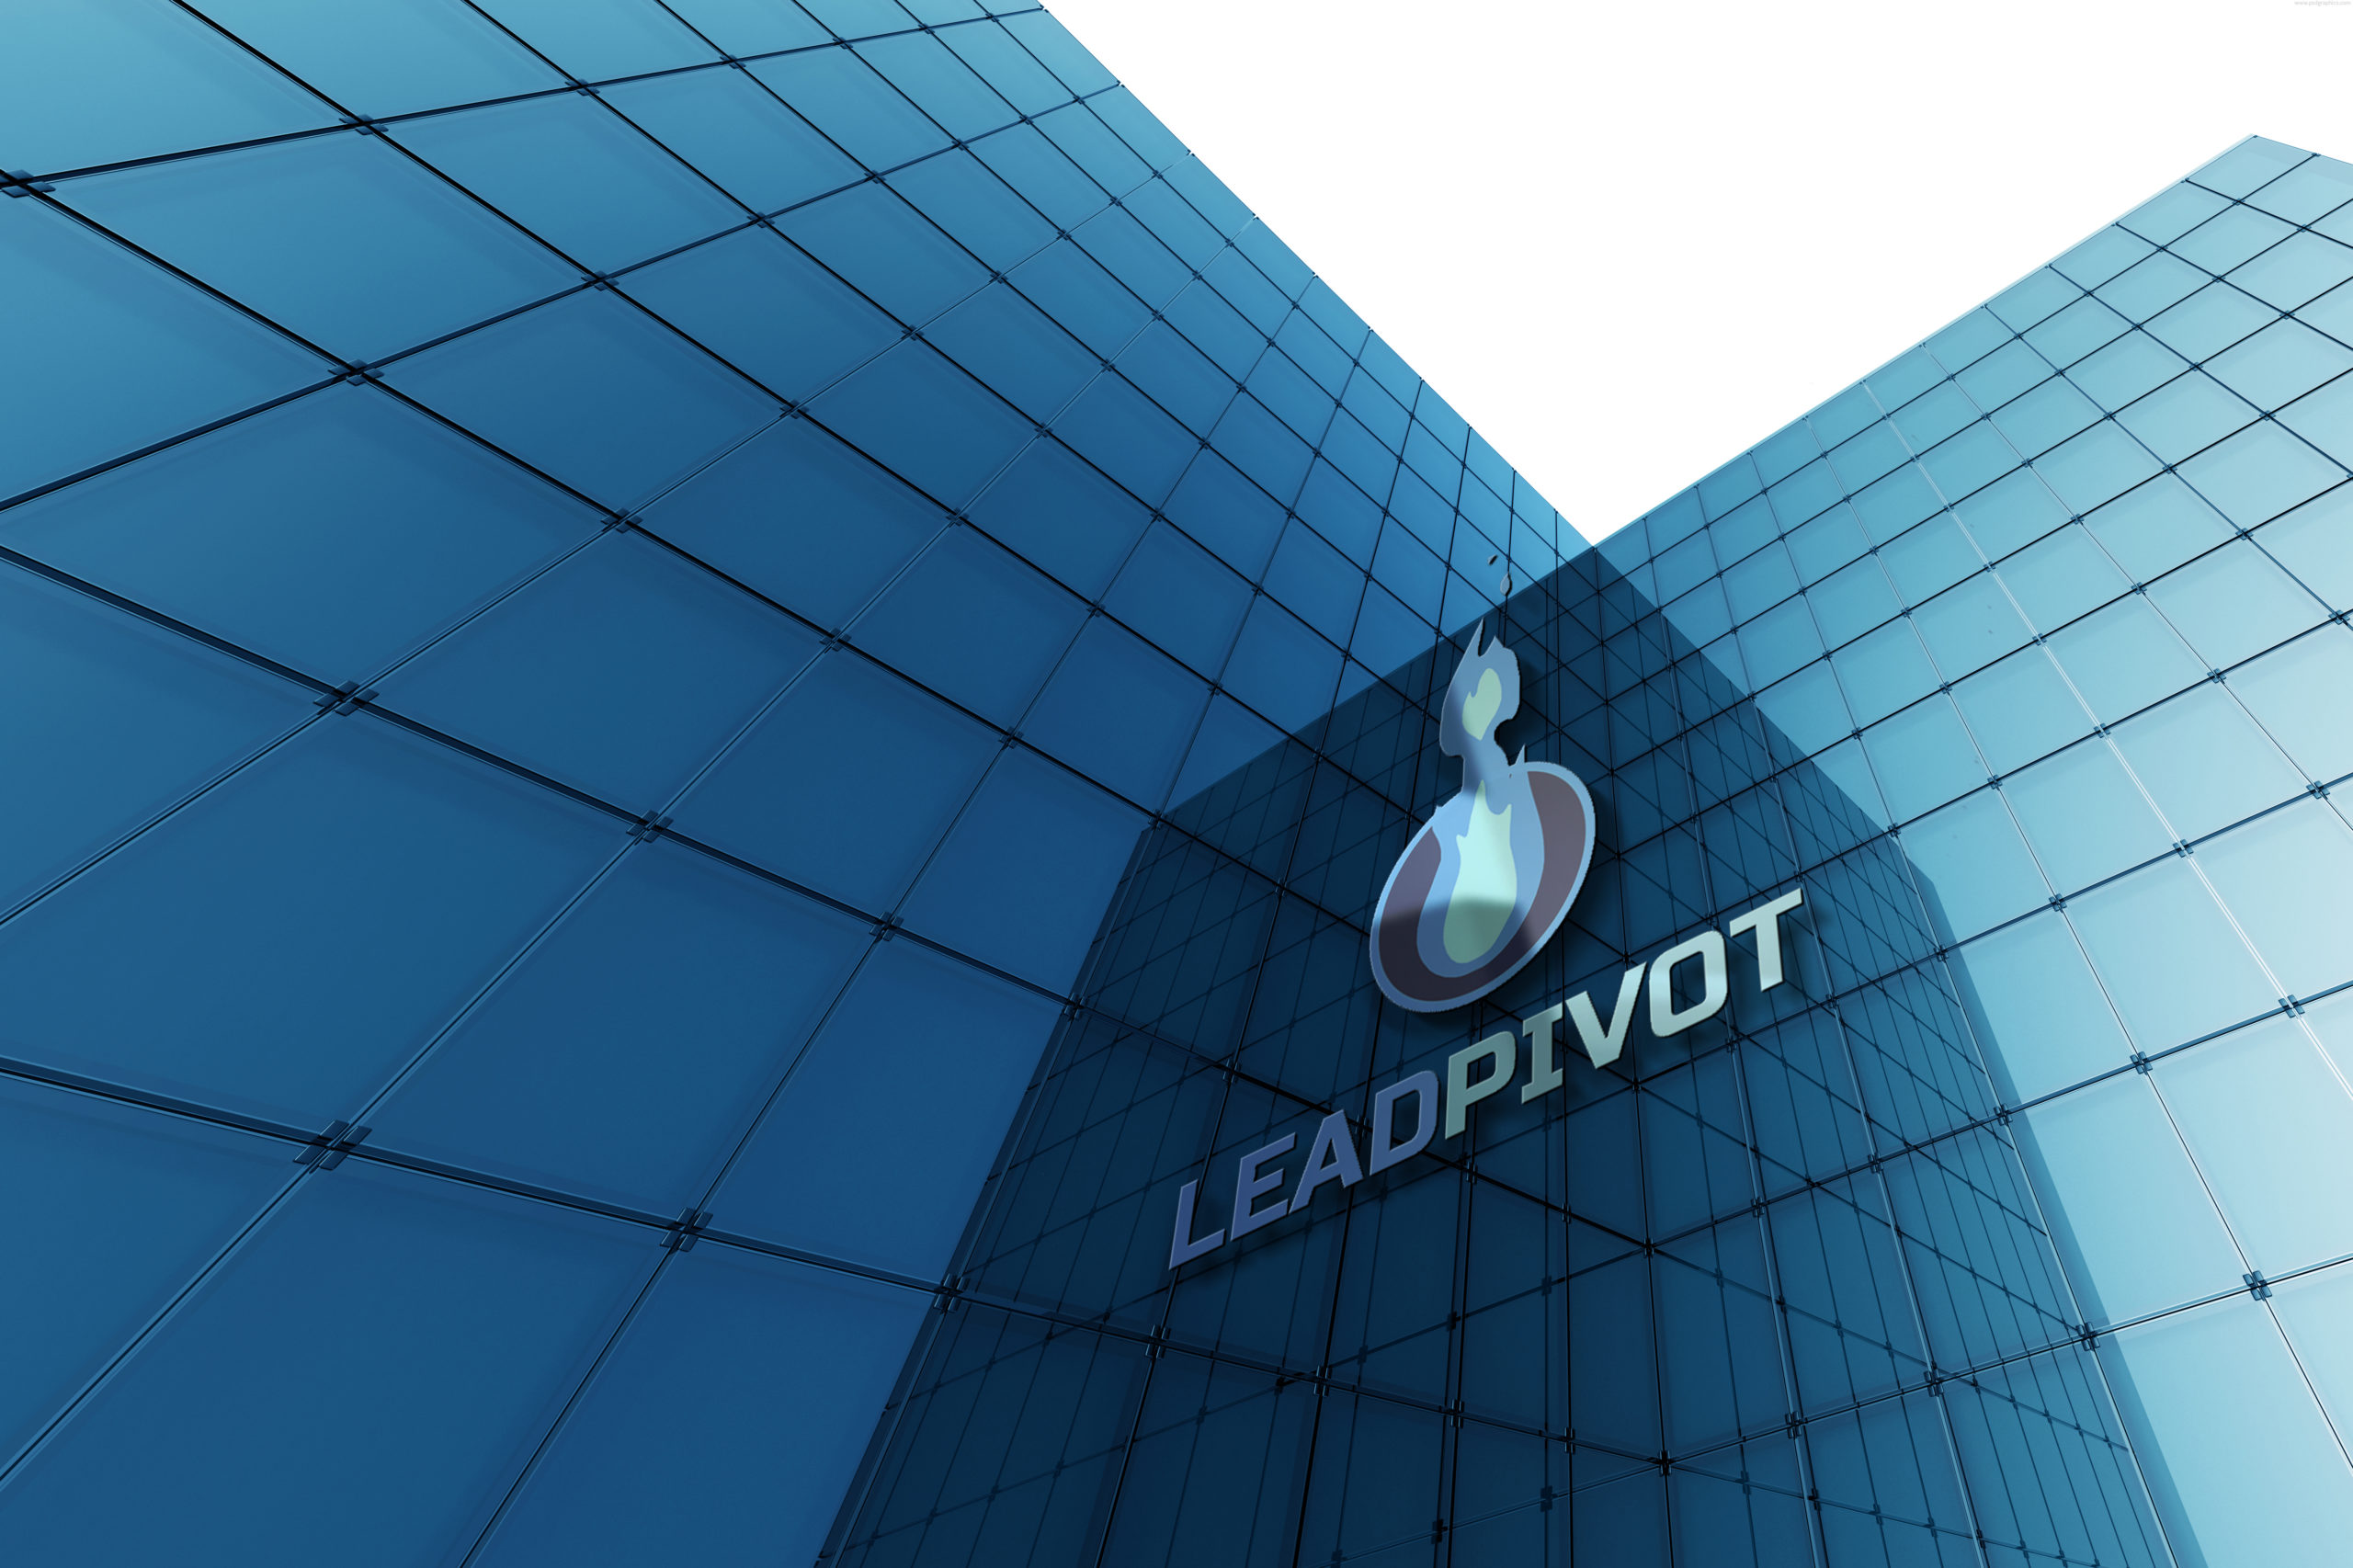 Leadpivot nace como una innovadora y tecnológica opción para tu empresa